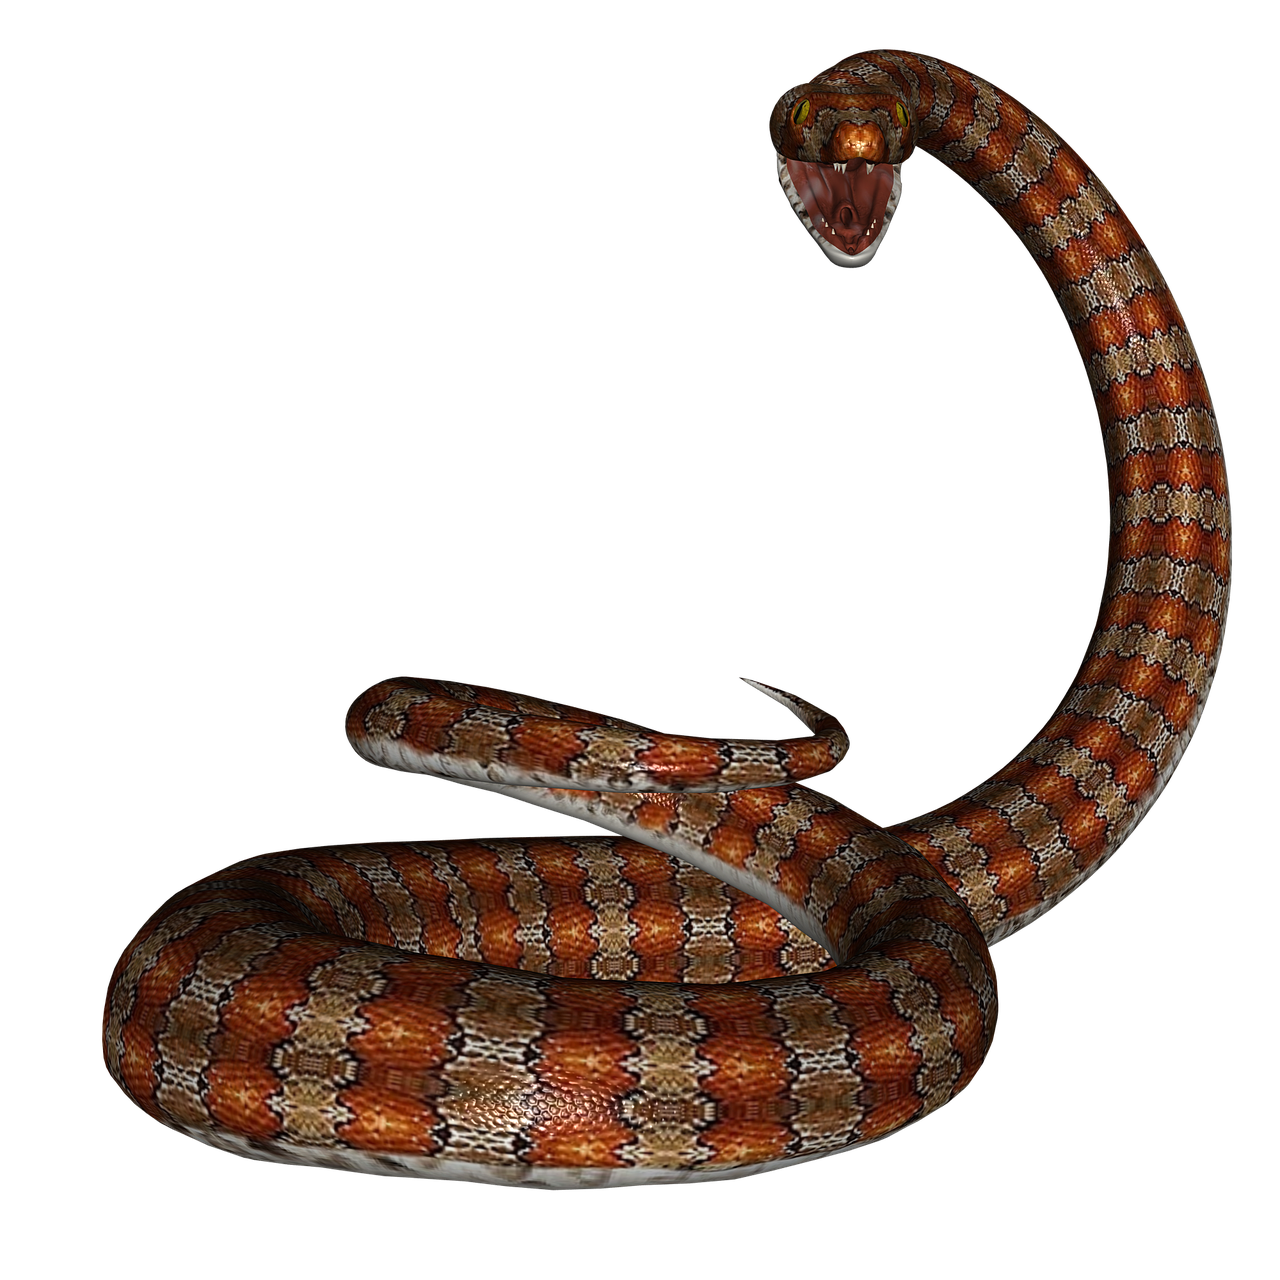 snake rat snake reptile free photo